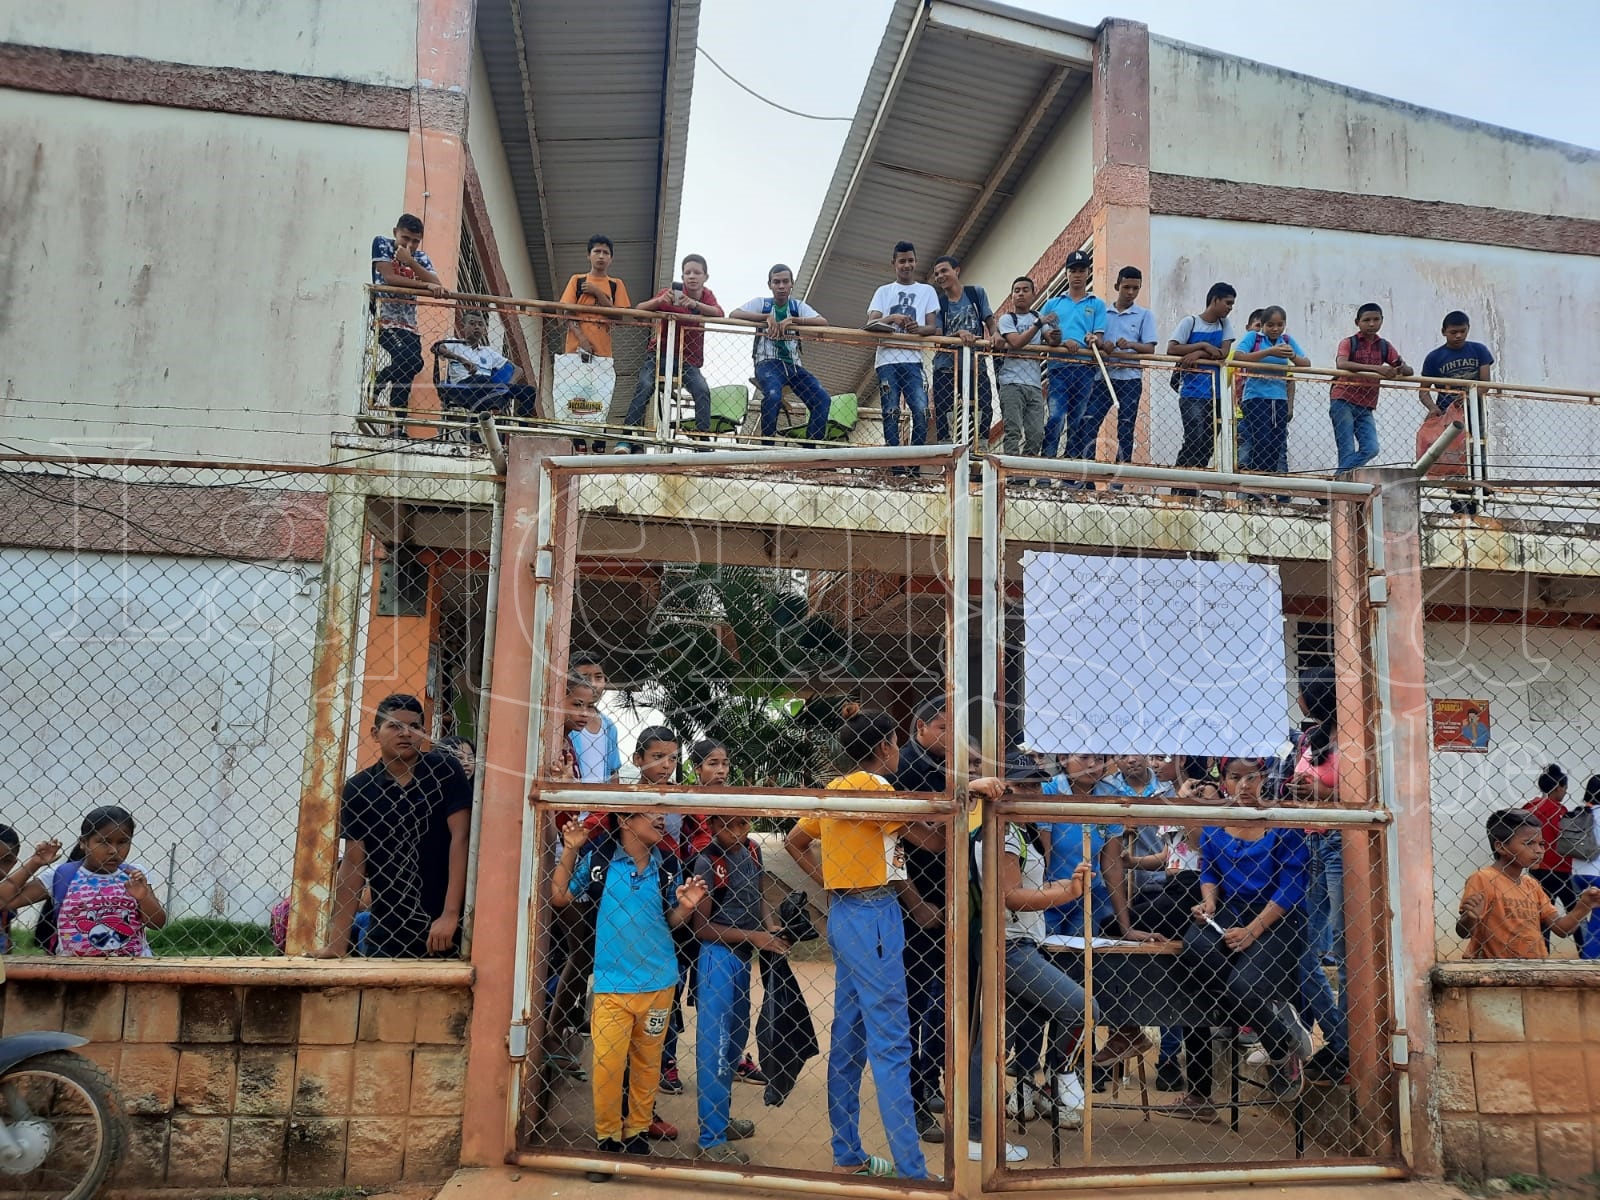 La I.E. Cerros de Costa Rica se cae a pedazos y nadie hace nada, estudiantes protestan en Pueblo Nuevo